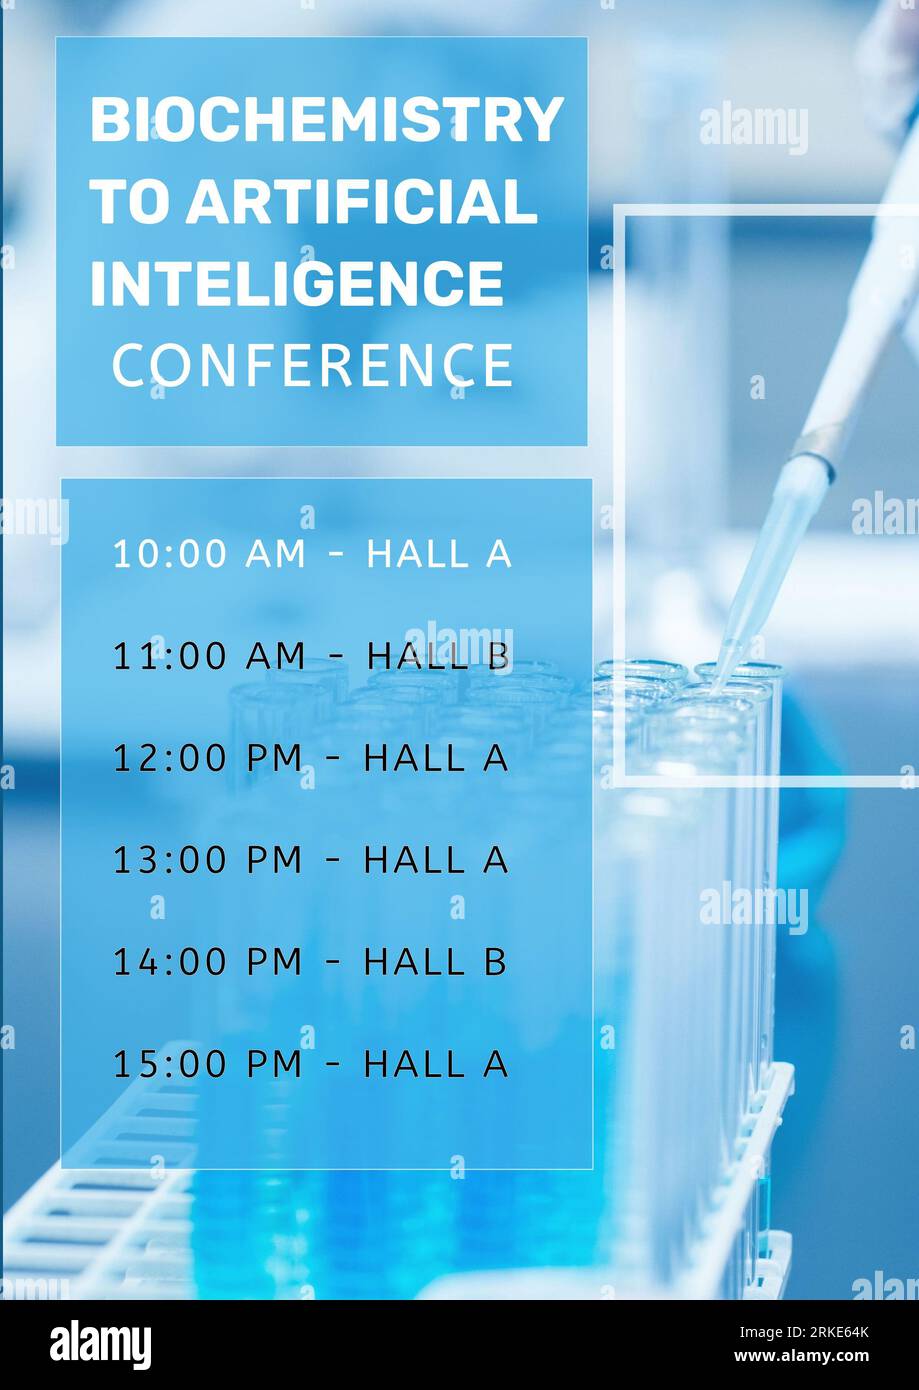 Kombination aus Biochemie und Konferenz mit künstlicher Intelligenz, Zeitpläne, Details zu Halle A und Halle B. Stockfoto